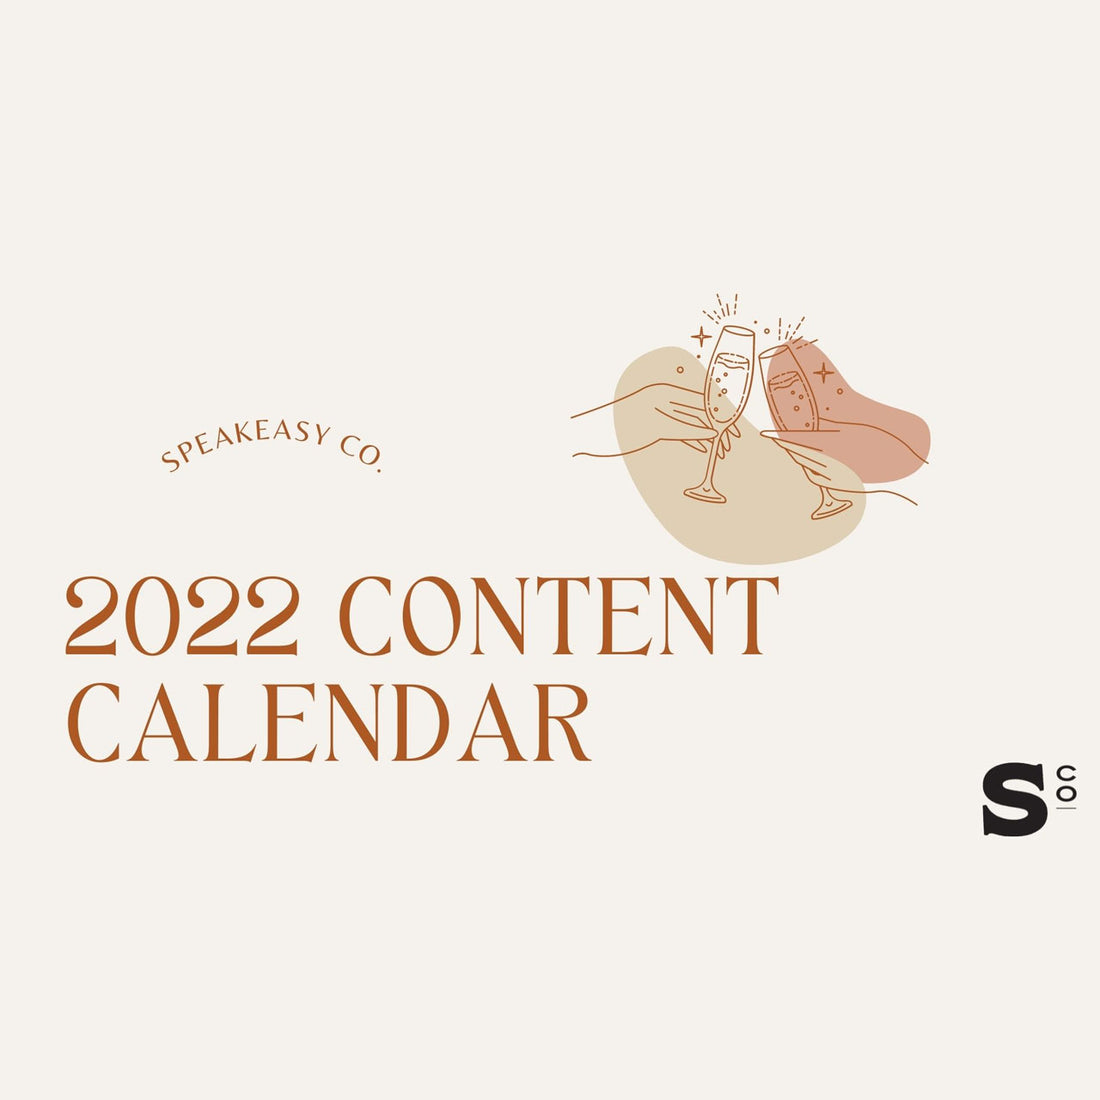 How to Create a Content Calendar